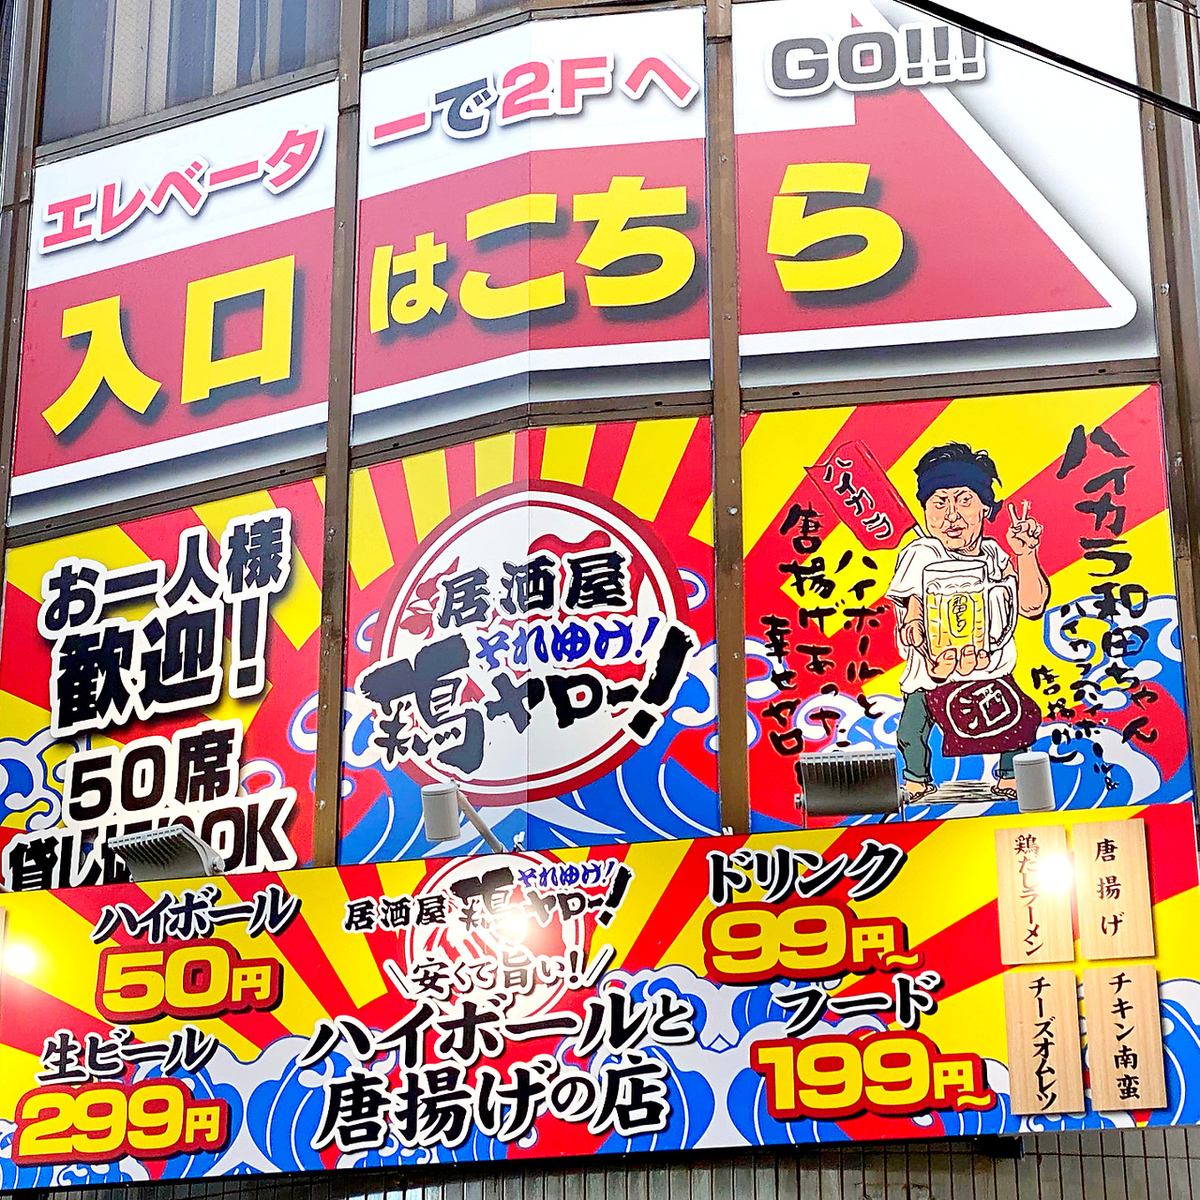 Kaku Highball 50 yen! Sour, wine, soft drink 99 yen! Draft beer 299 yen